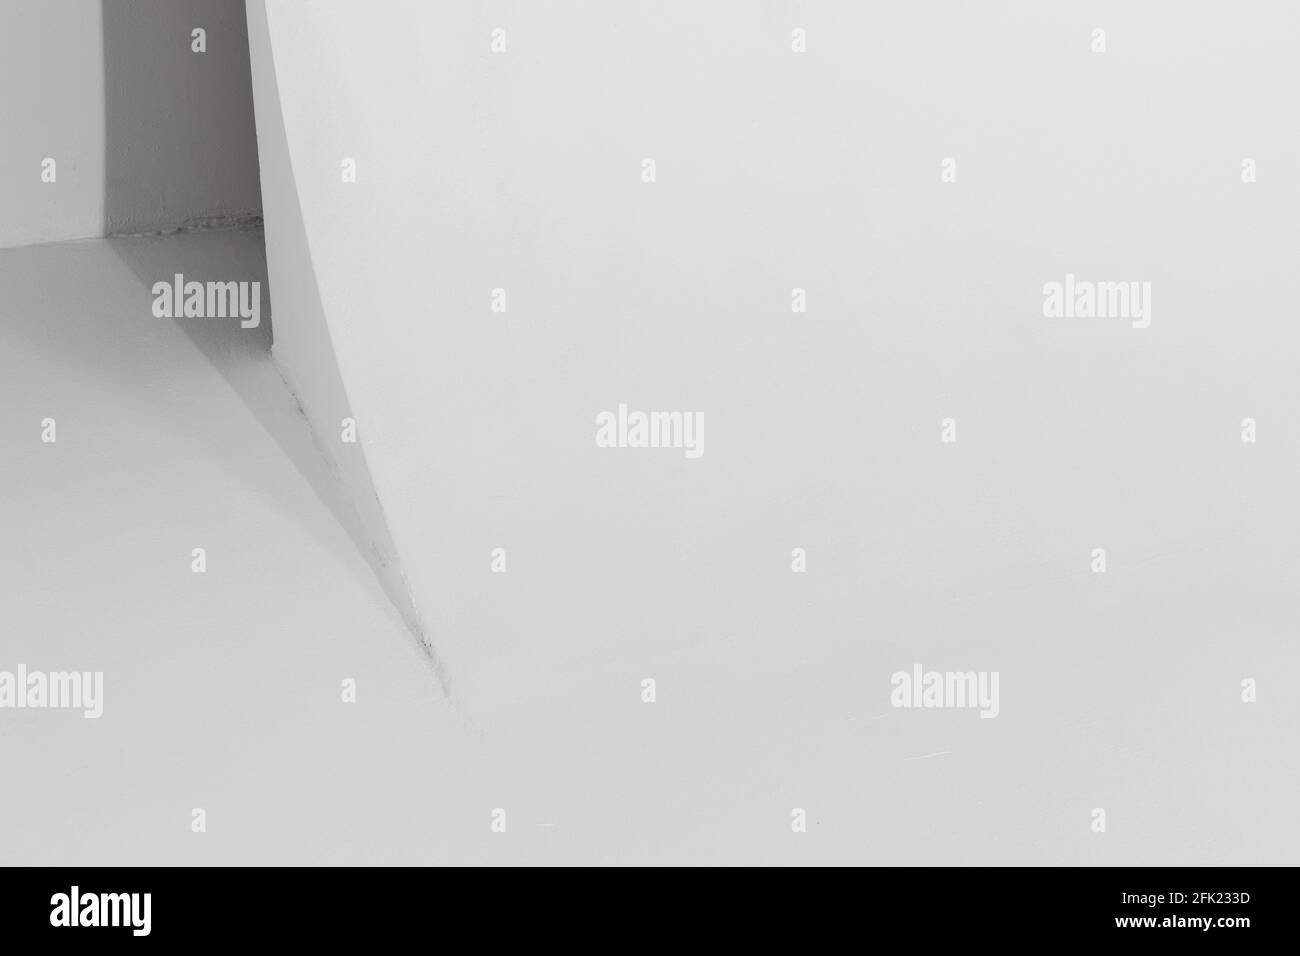 Fragment intérieur studio blanc vierge, structure de cyclorama blanc avec transition en douceur entre les plans horizontal et vertical. Photo d'arrière-plan Banque D'Images